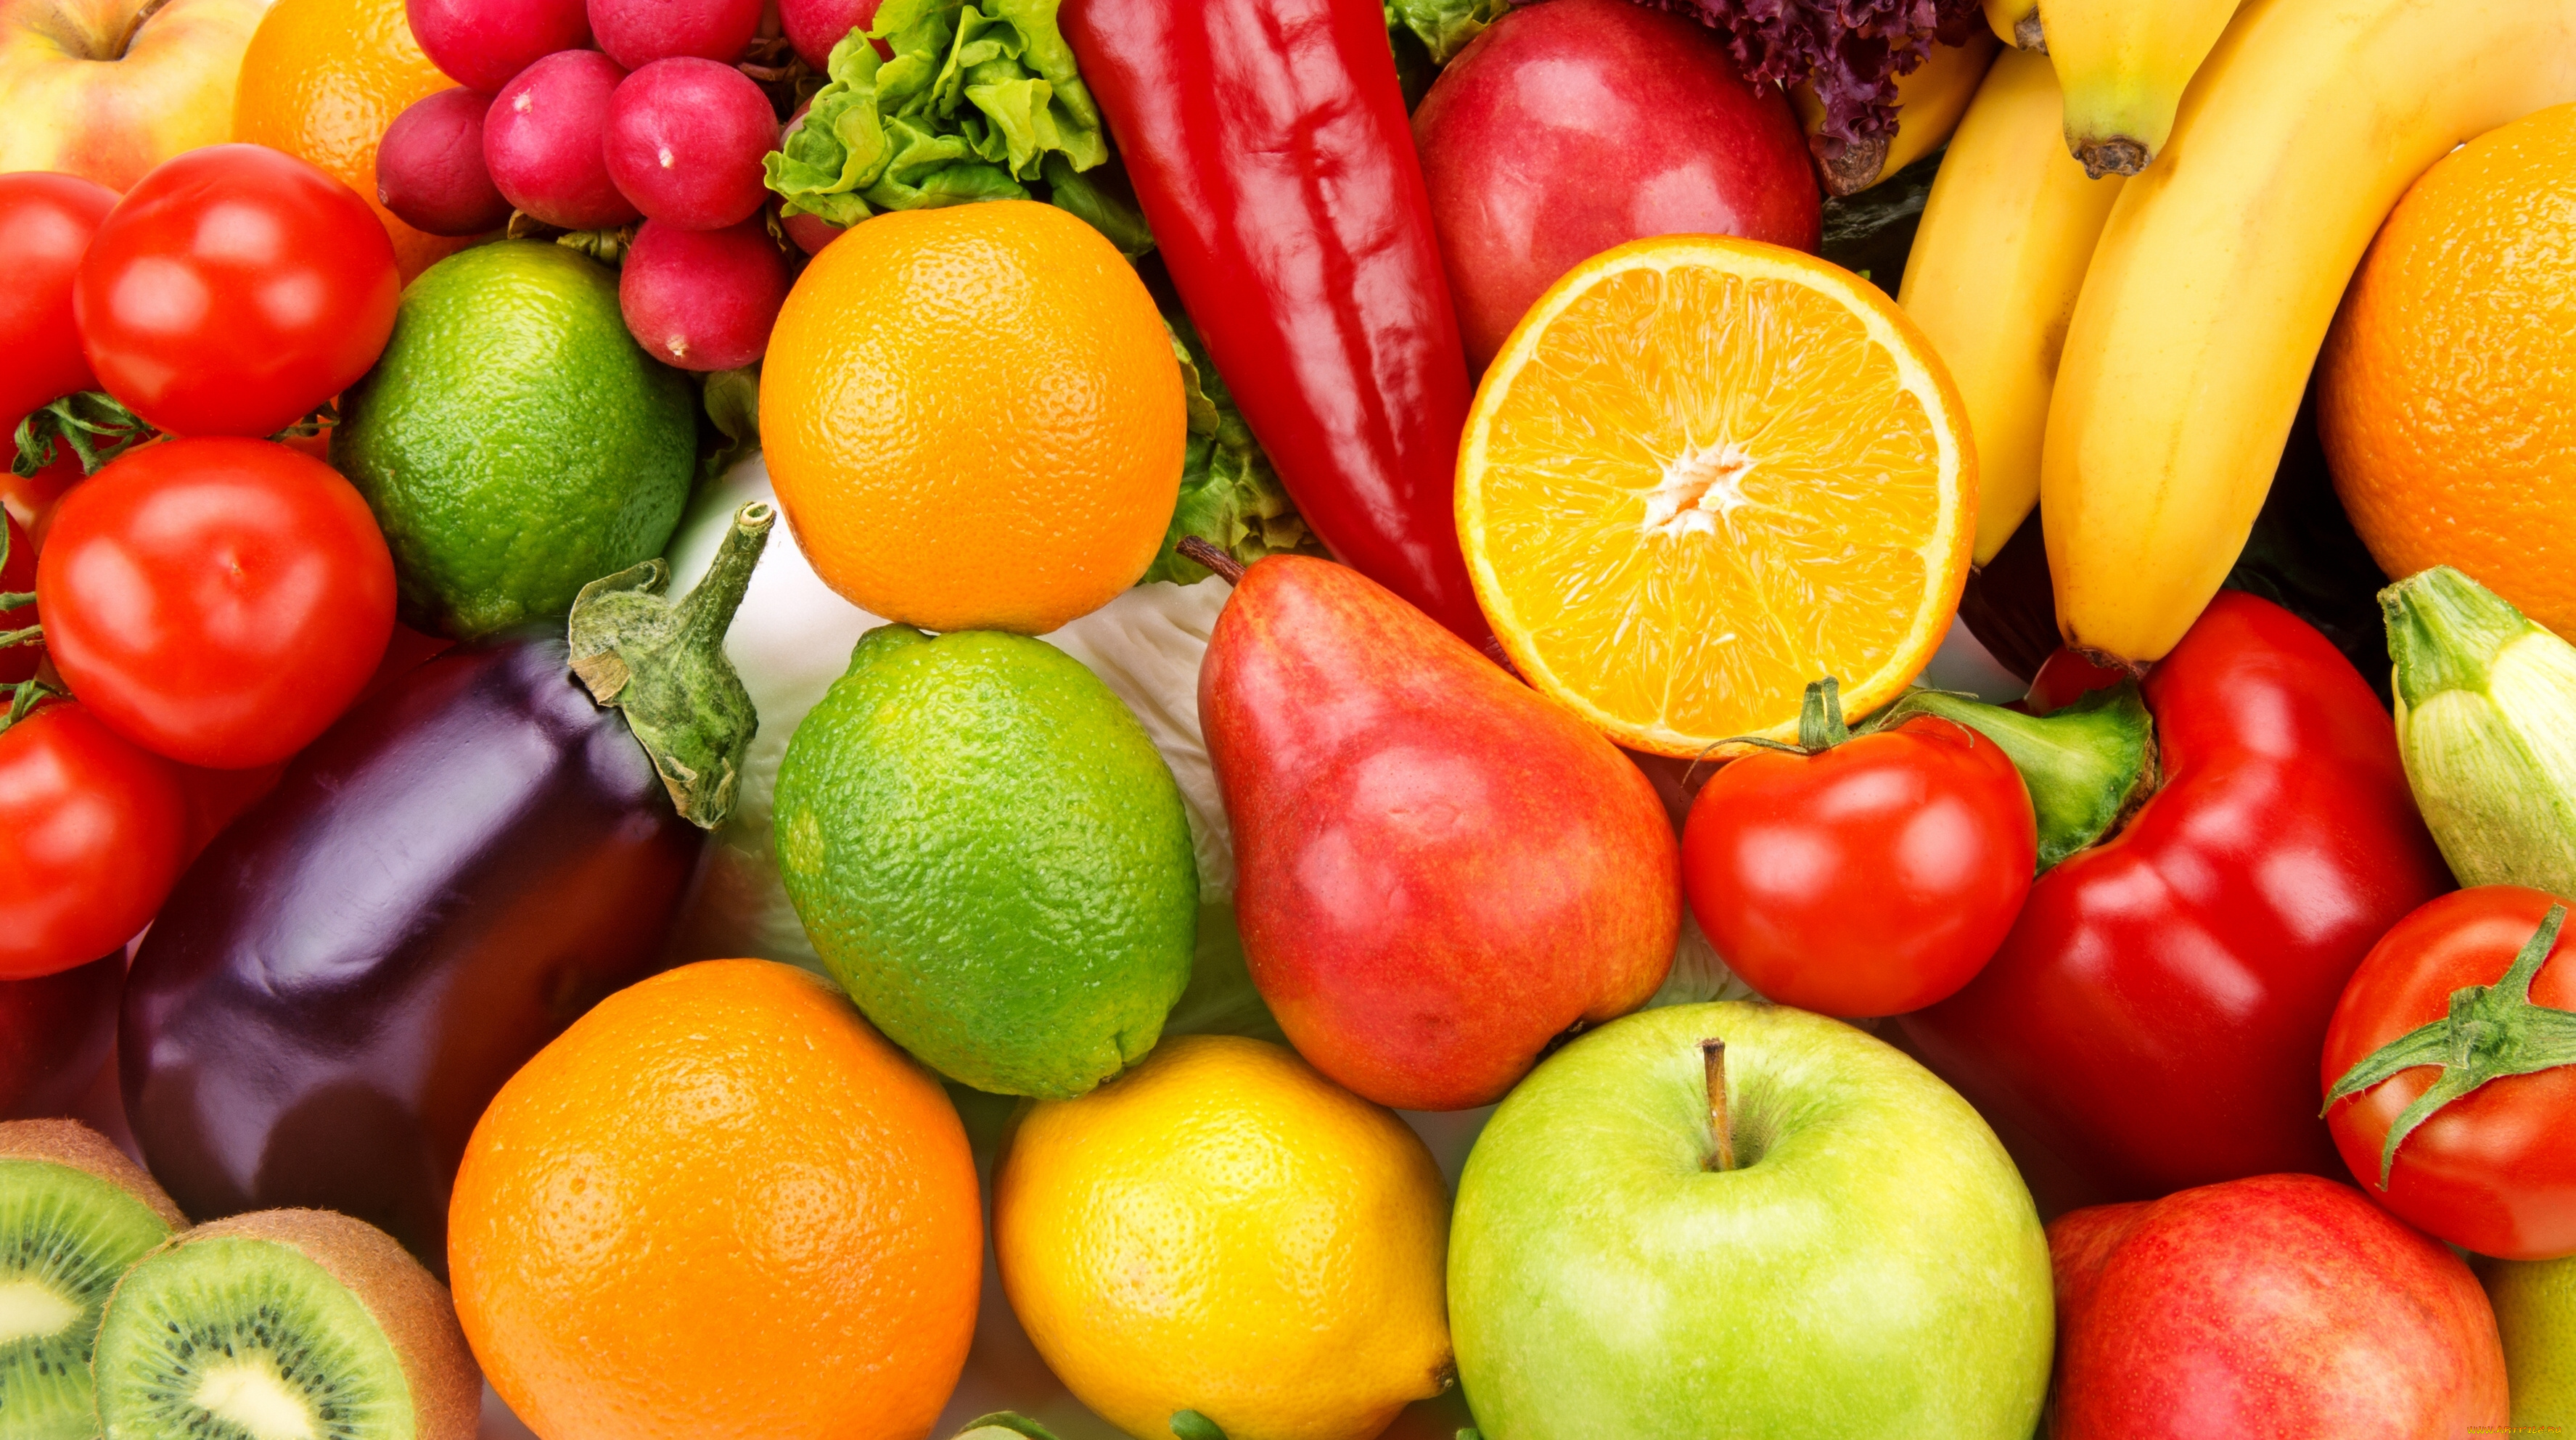 еда, фрукты, и, овощи, вместе, яблоки, баклажан, редиска, паприка, помидоры, овощи, фрукты, киви, груши, лимоны, бананы